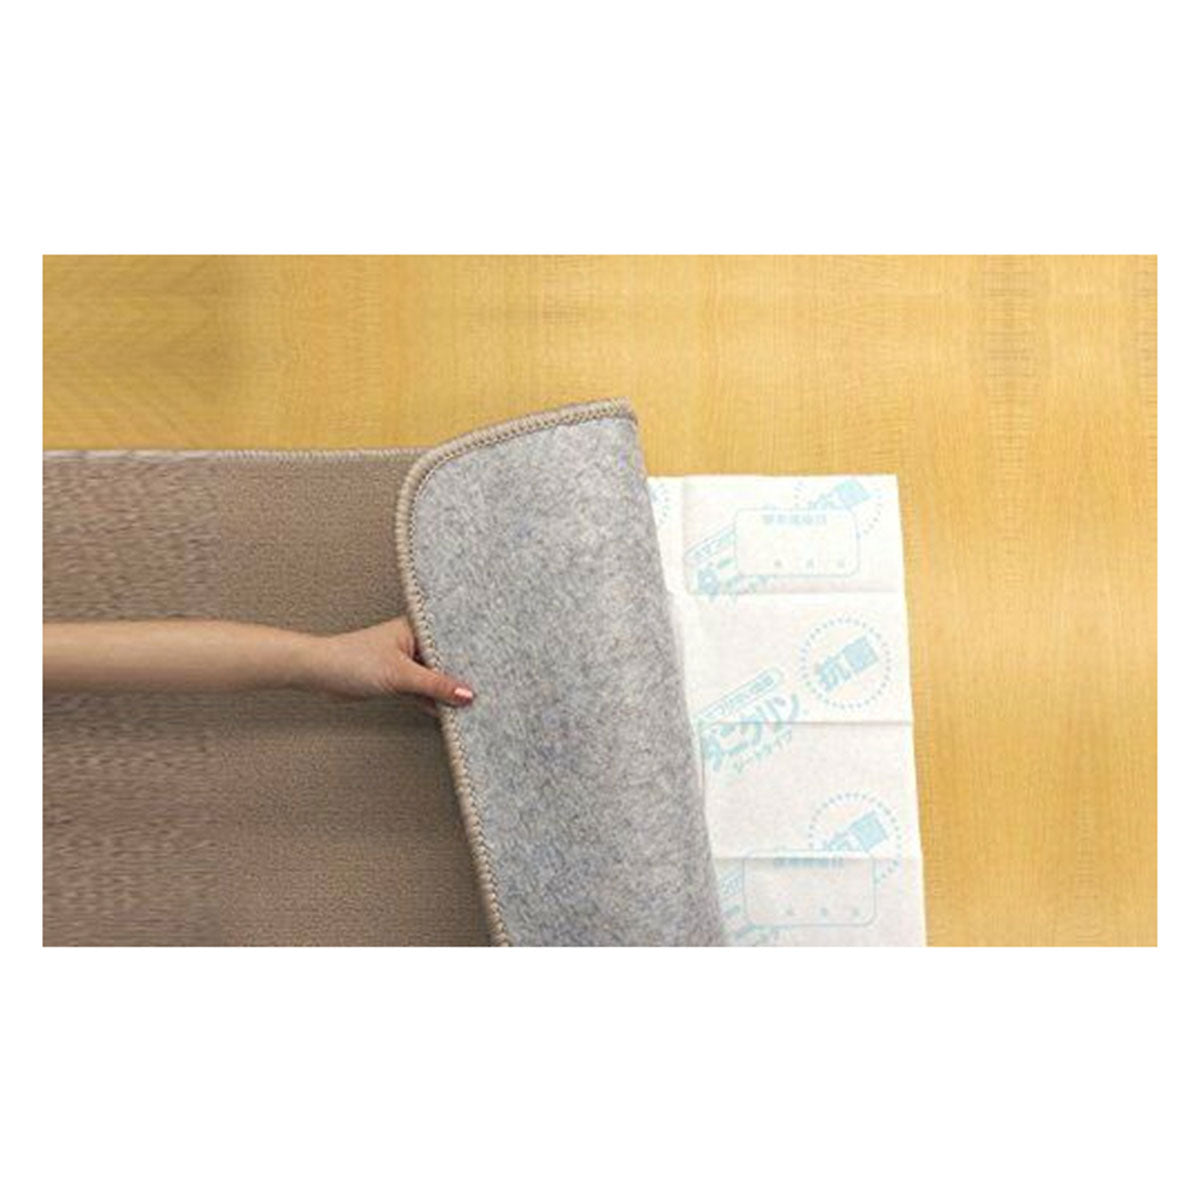 除臭抗菌防螨垫  3枚入 被罩被单床垫 均可使用